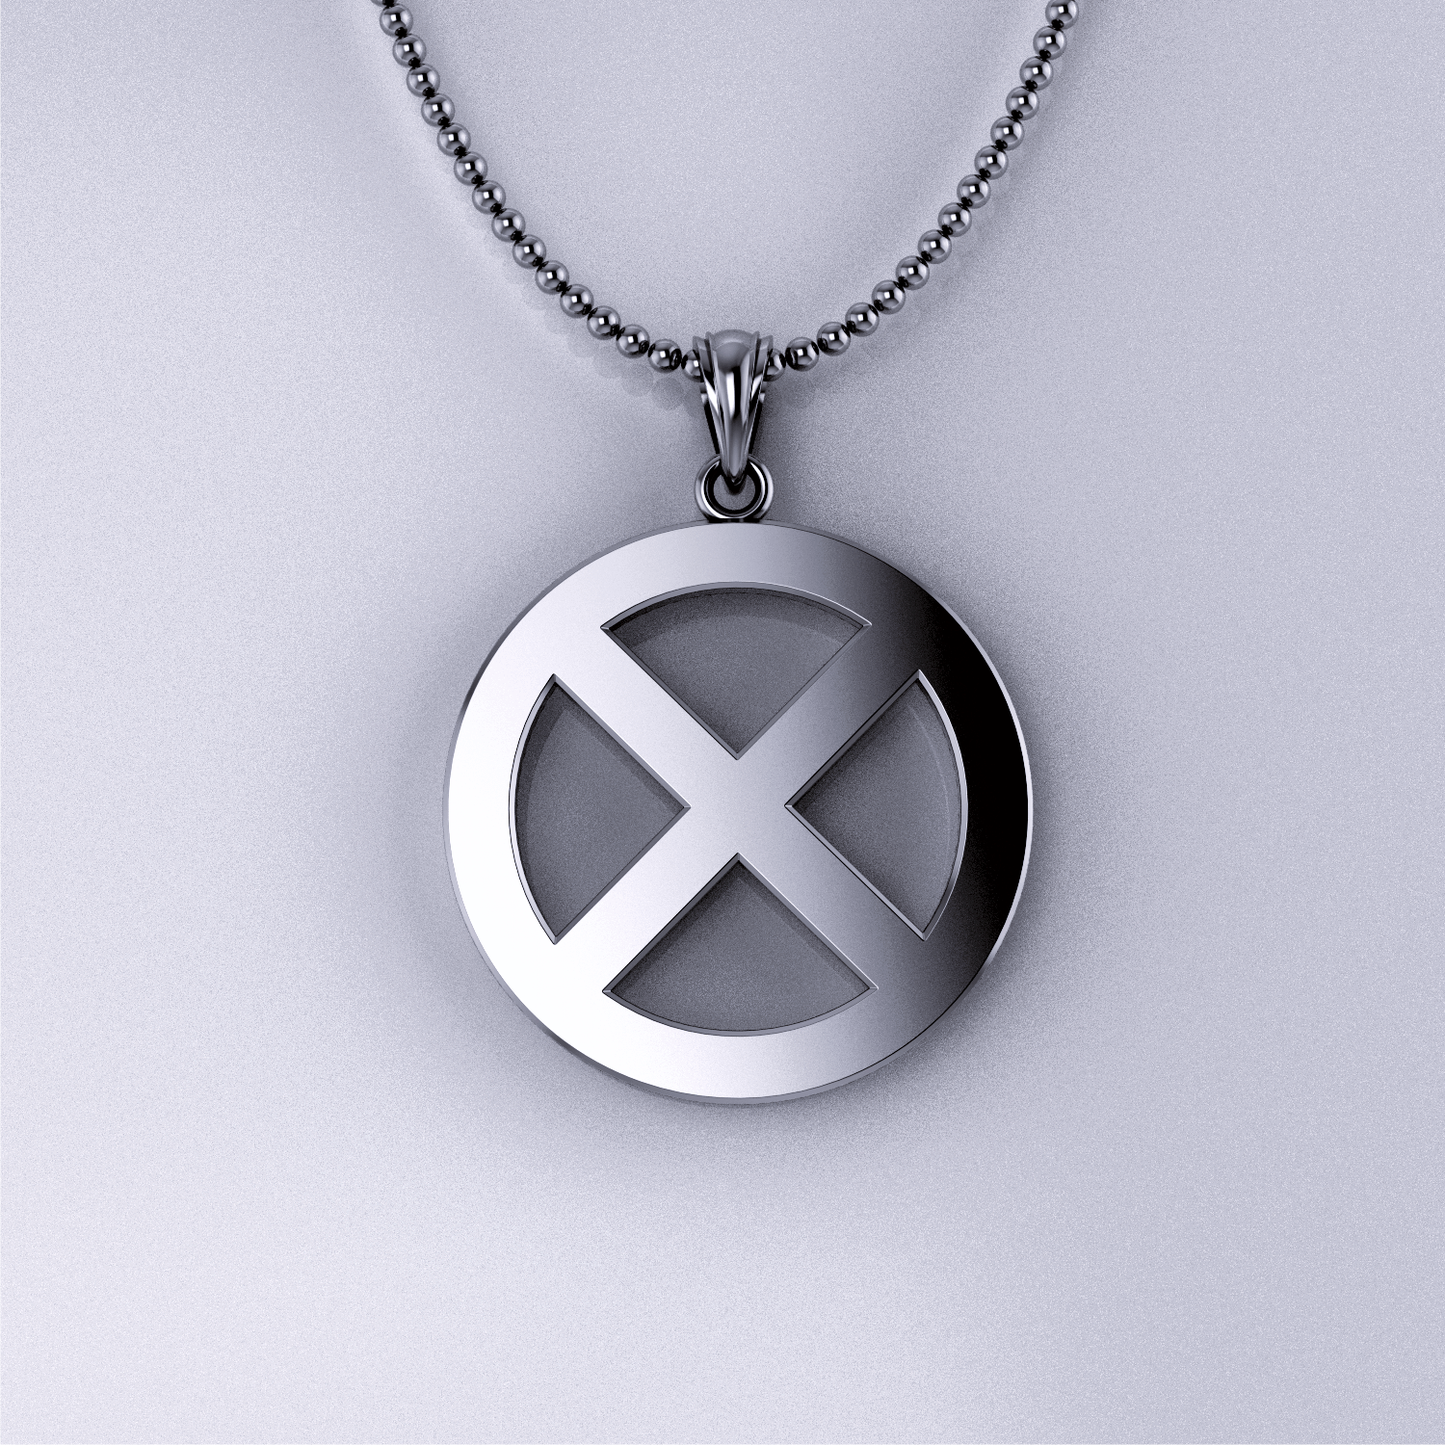 The -X- Pendant